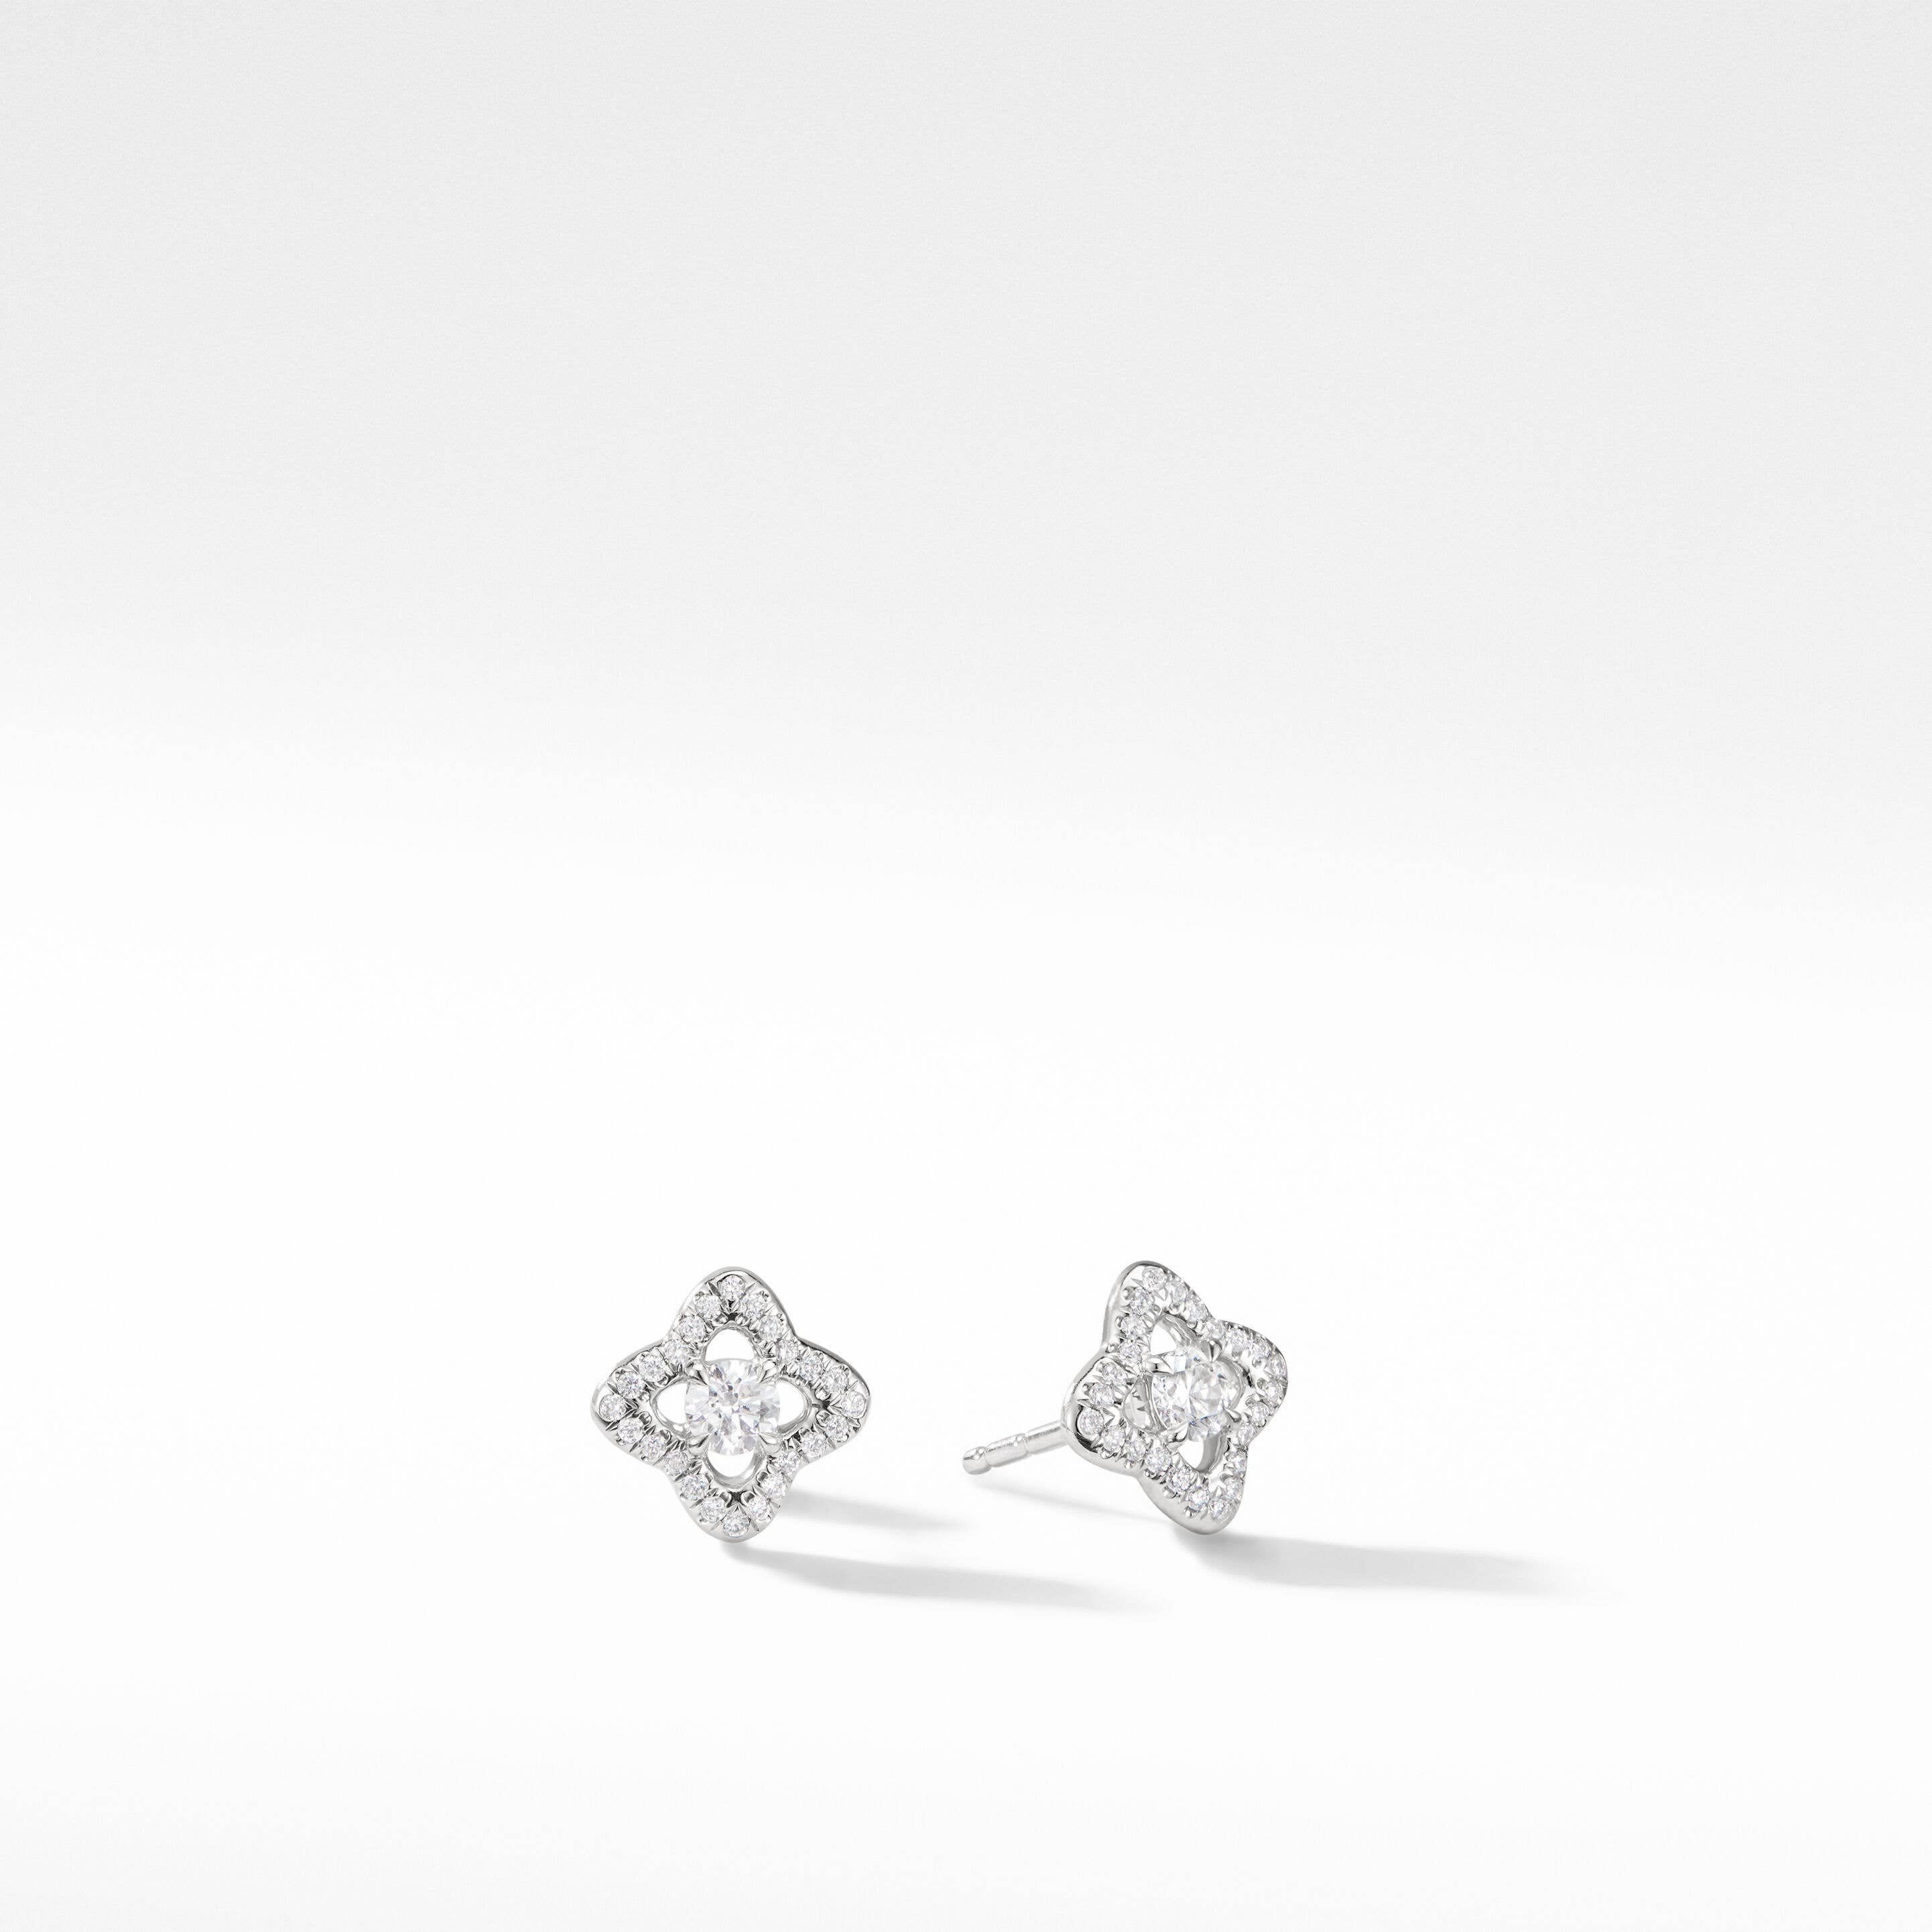 Venetian Quatrefoil® Stud Earrings in 18K White Gold with Diamonds